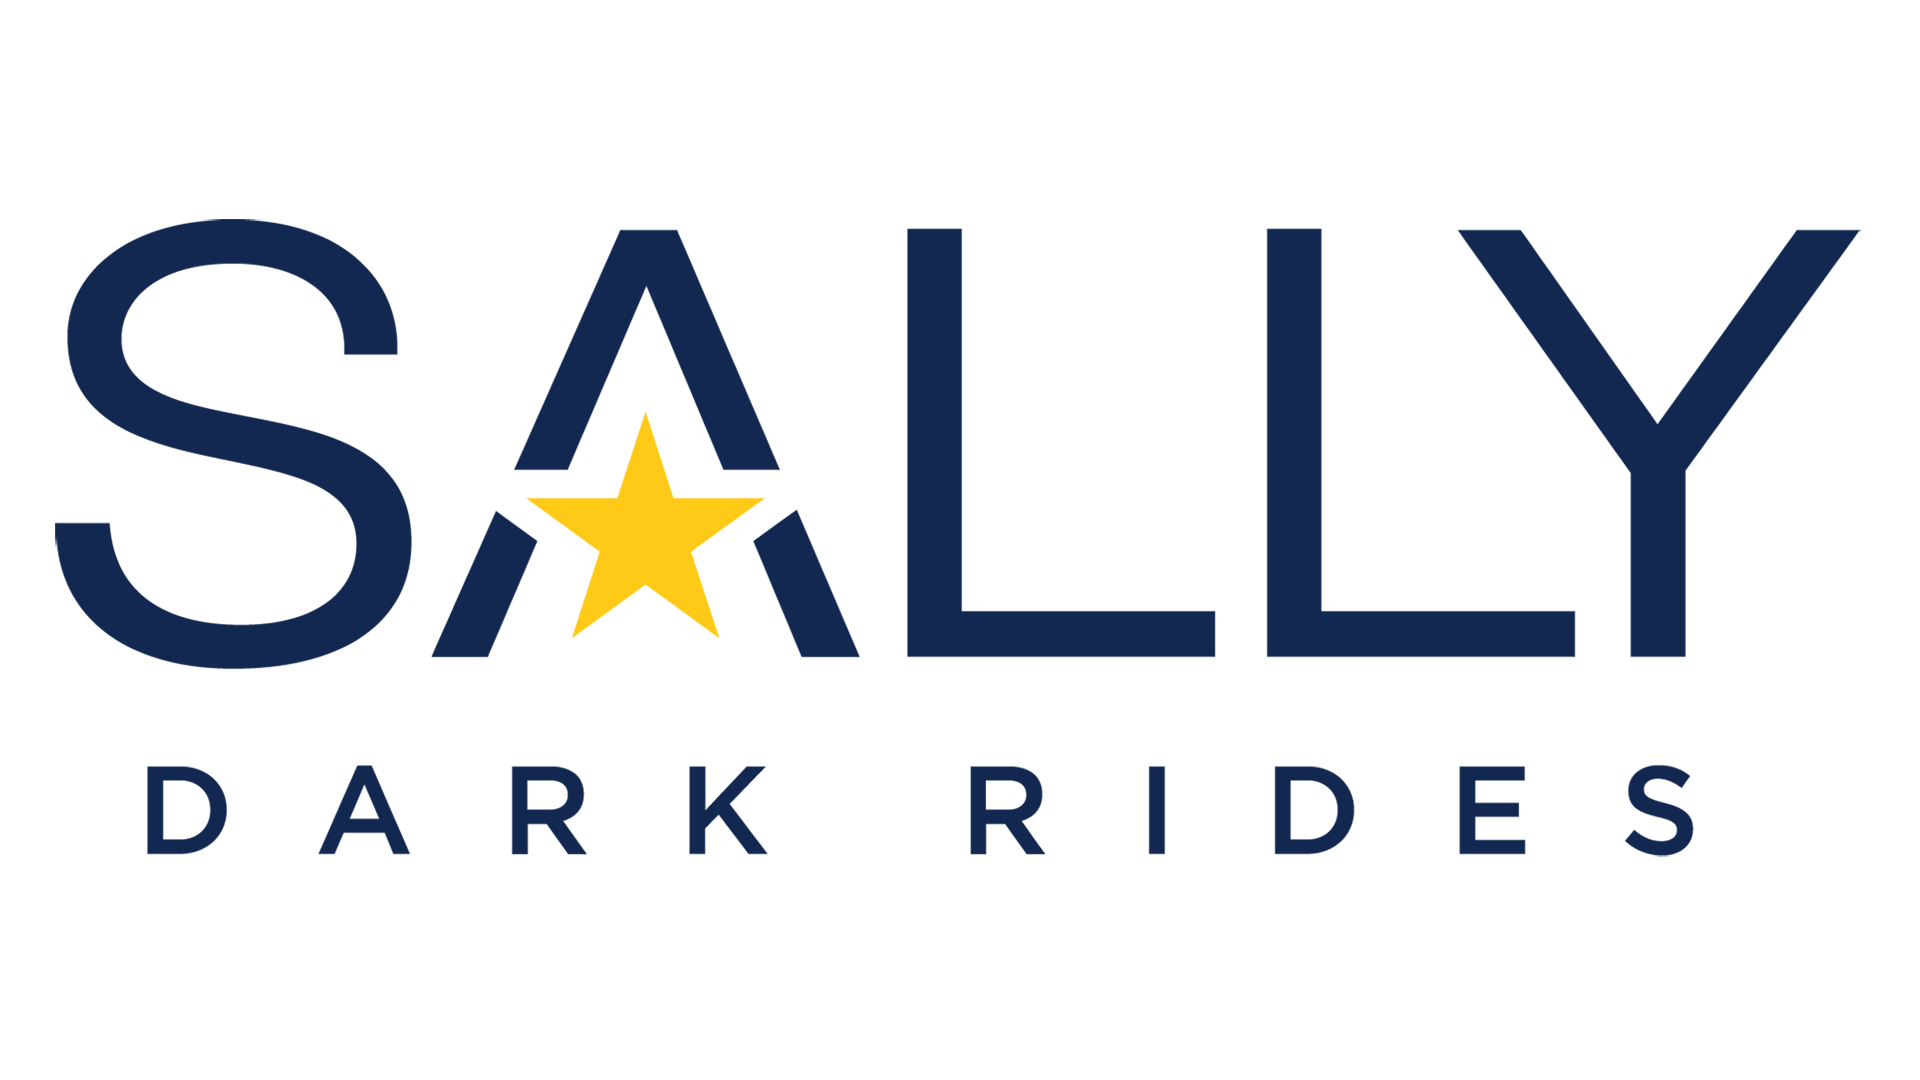 Sally Dark Rides